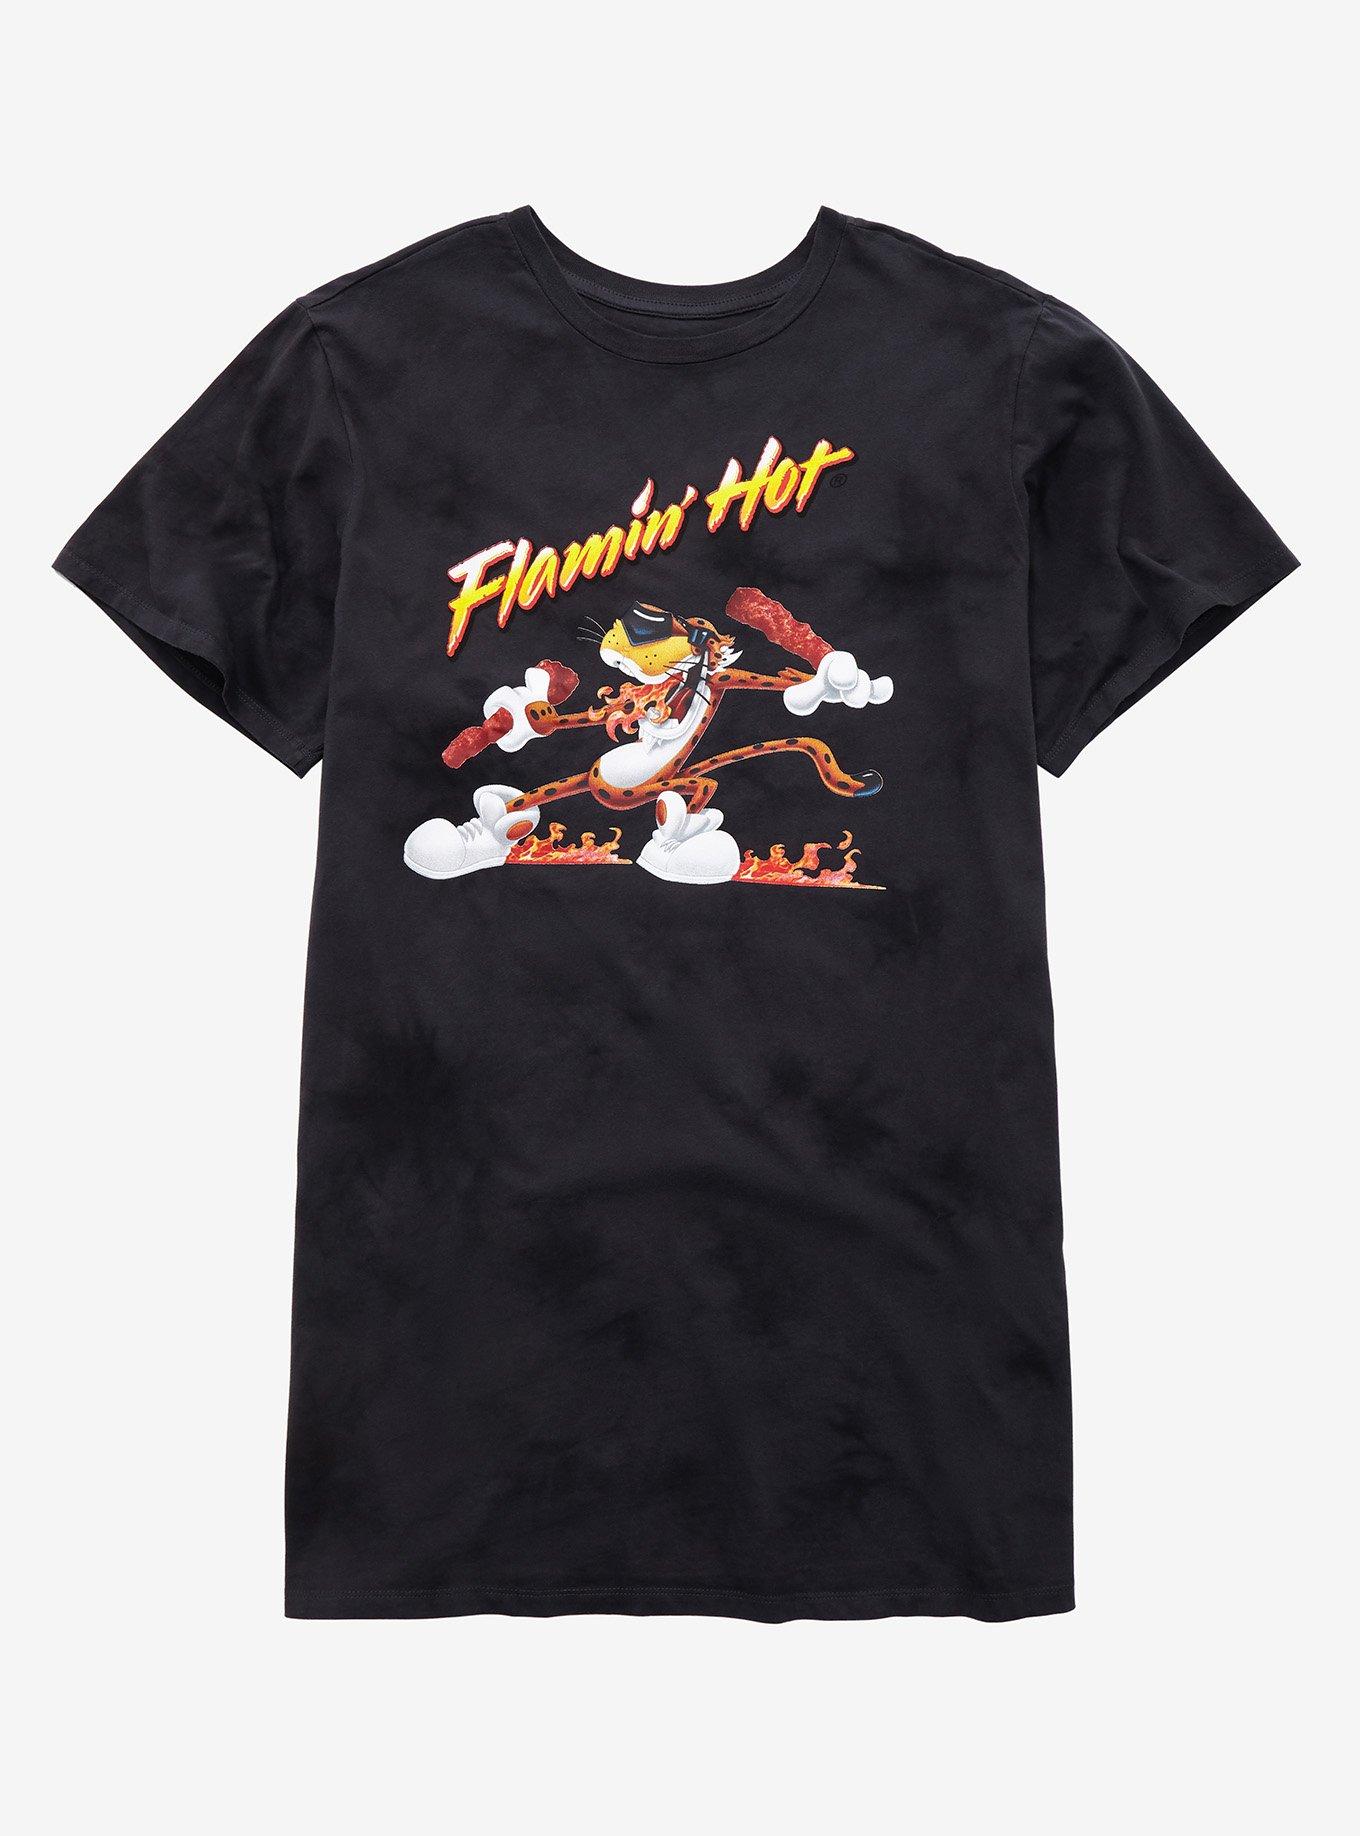 Cheetos Flamin' Hot Tie-Dye T-Shirt Dress Plus Size, TIE DYE - GREY, hi-res